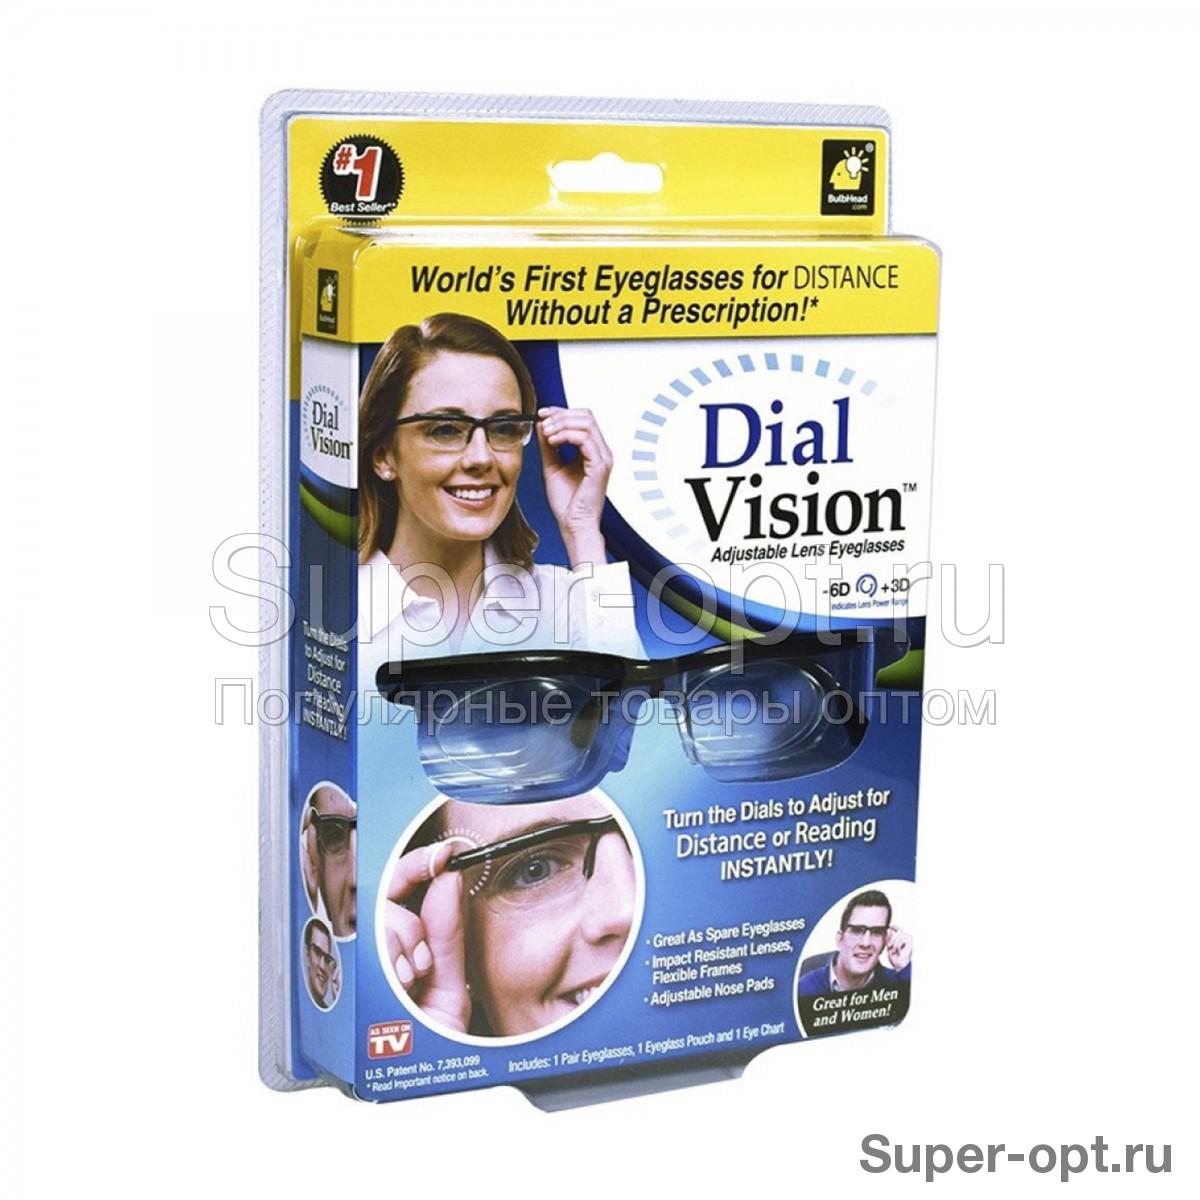 Очки с регулировкой линз Dial Vision - Adlens